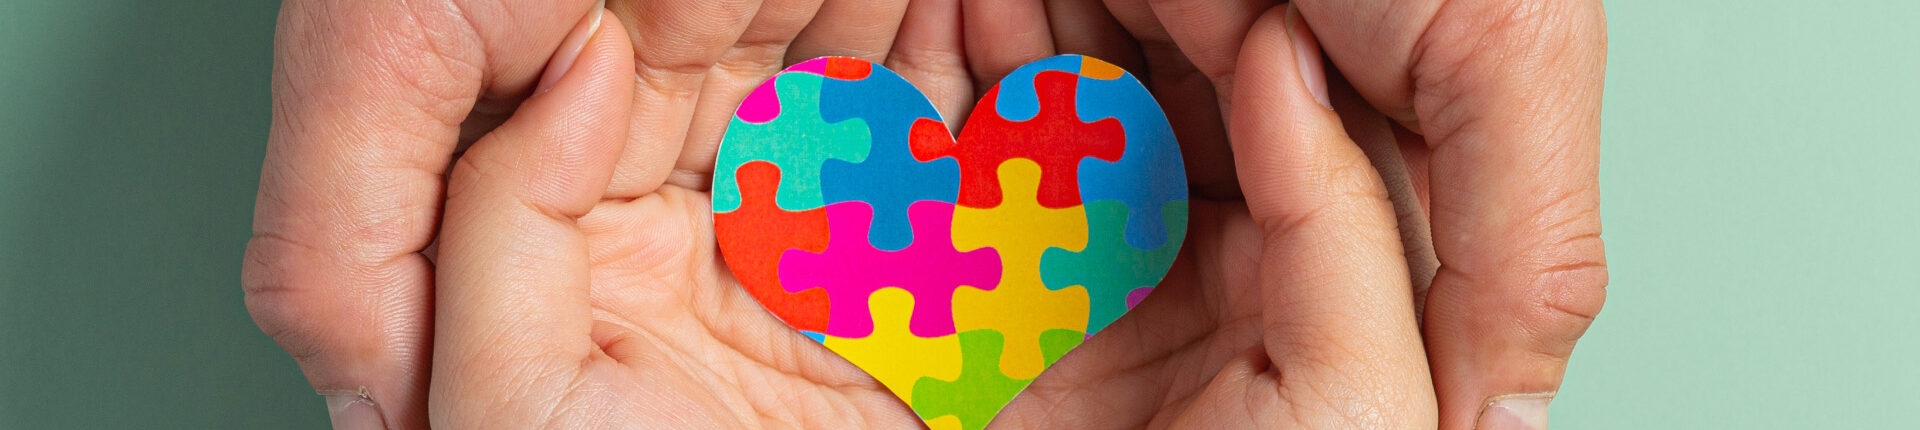 Journée mondiale de sensibilisation à l’autisme : soutenons les personnes autistes